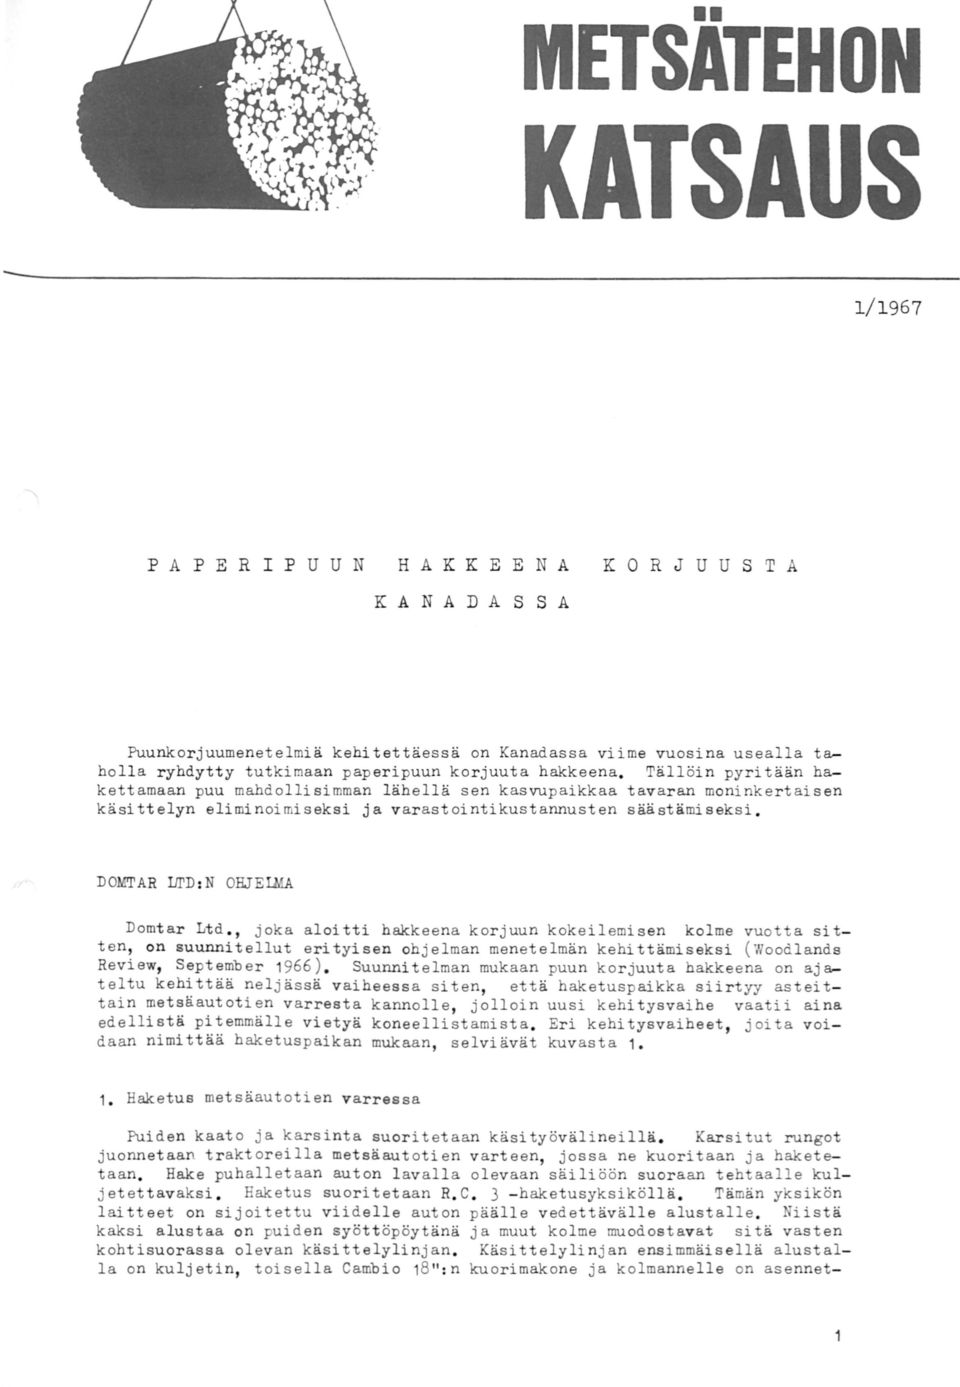 DOMTAR lji'd : N OHJELMA Domtar Ltd., joka aloitti hakkeena korjuun kokeilemisen kolme vuotta sitten, on suunnitellut erityisen ohjelman menetelmän kehittämiseksi (Woodlands Review, September 1966).